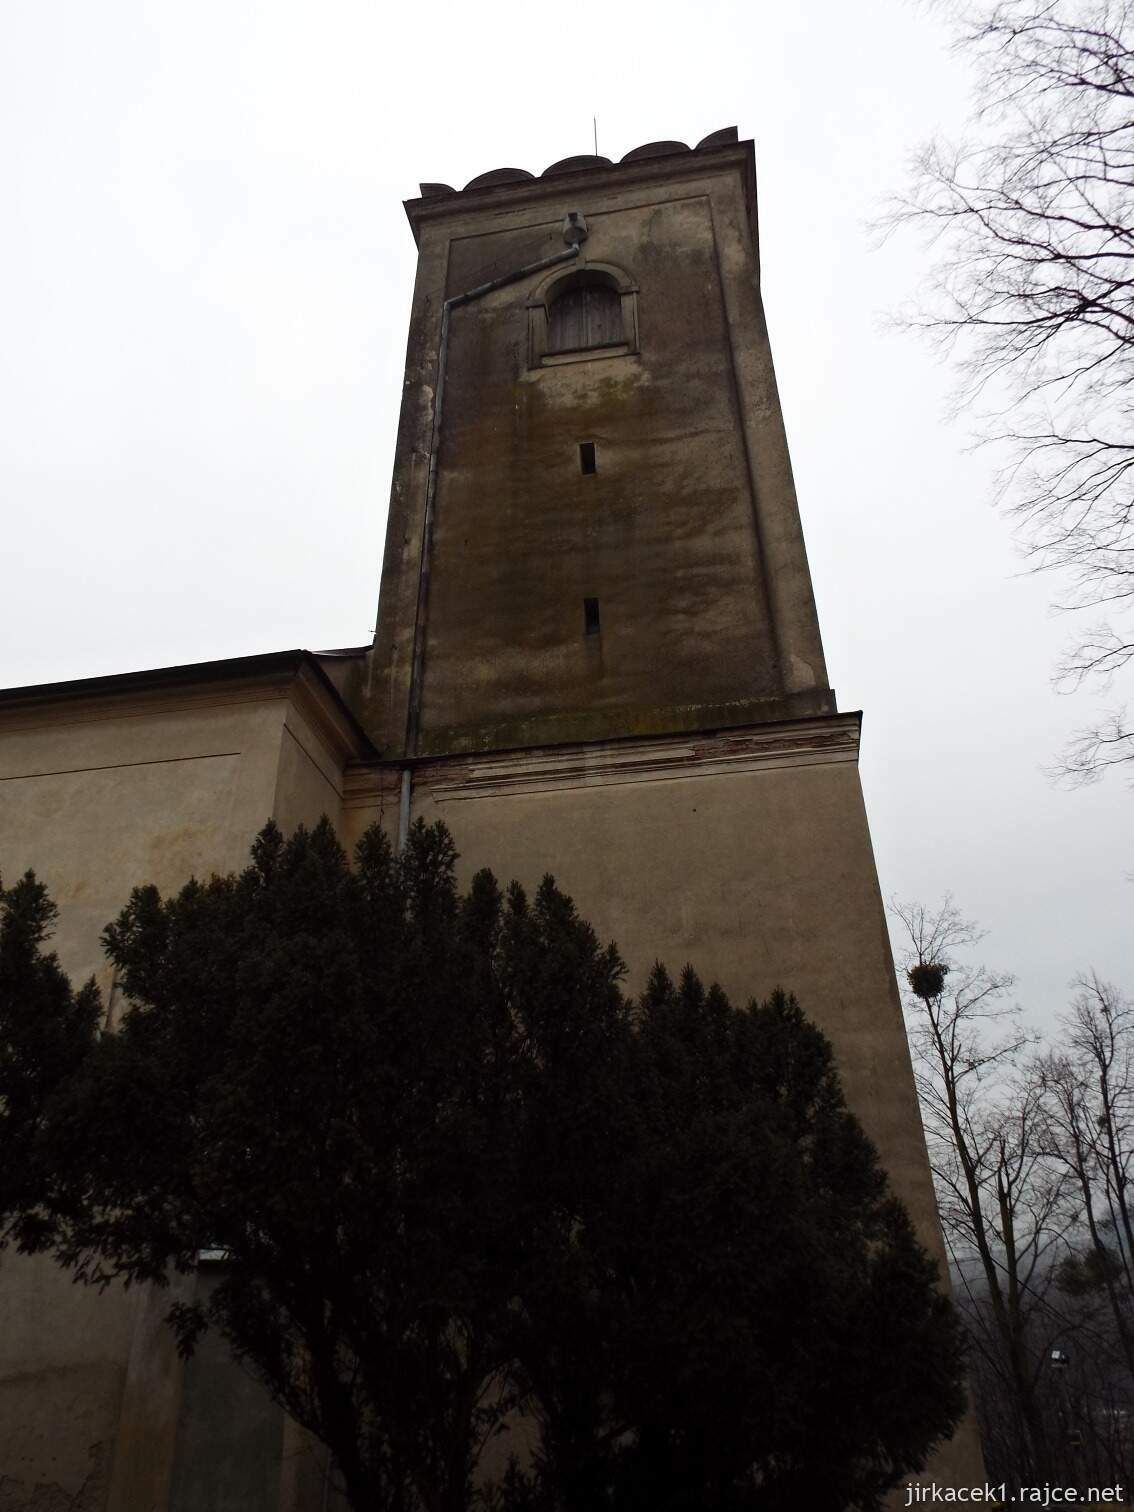 E - Fulnek - kostel Nanebevzetí Panny Marie v Jerlochovicíc​h 13 - věž s okapem